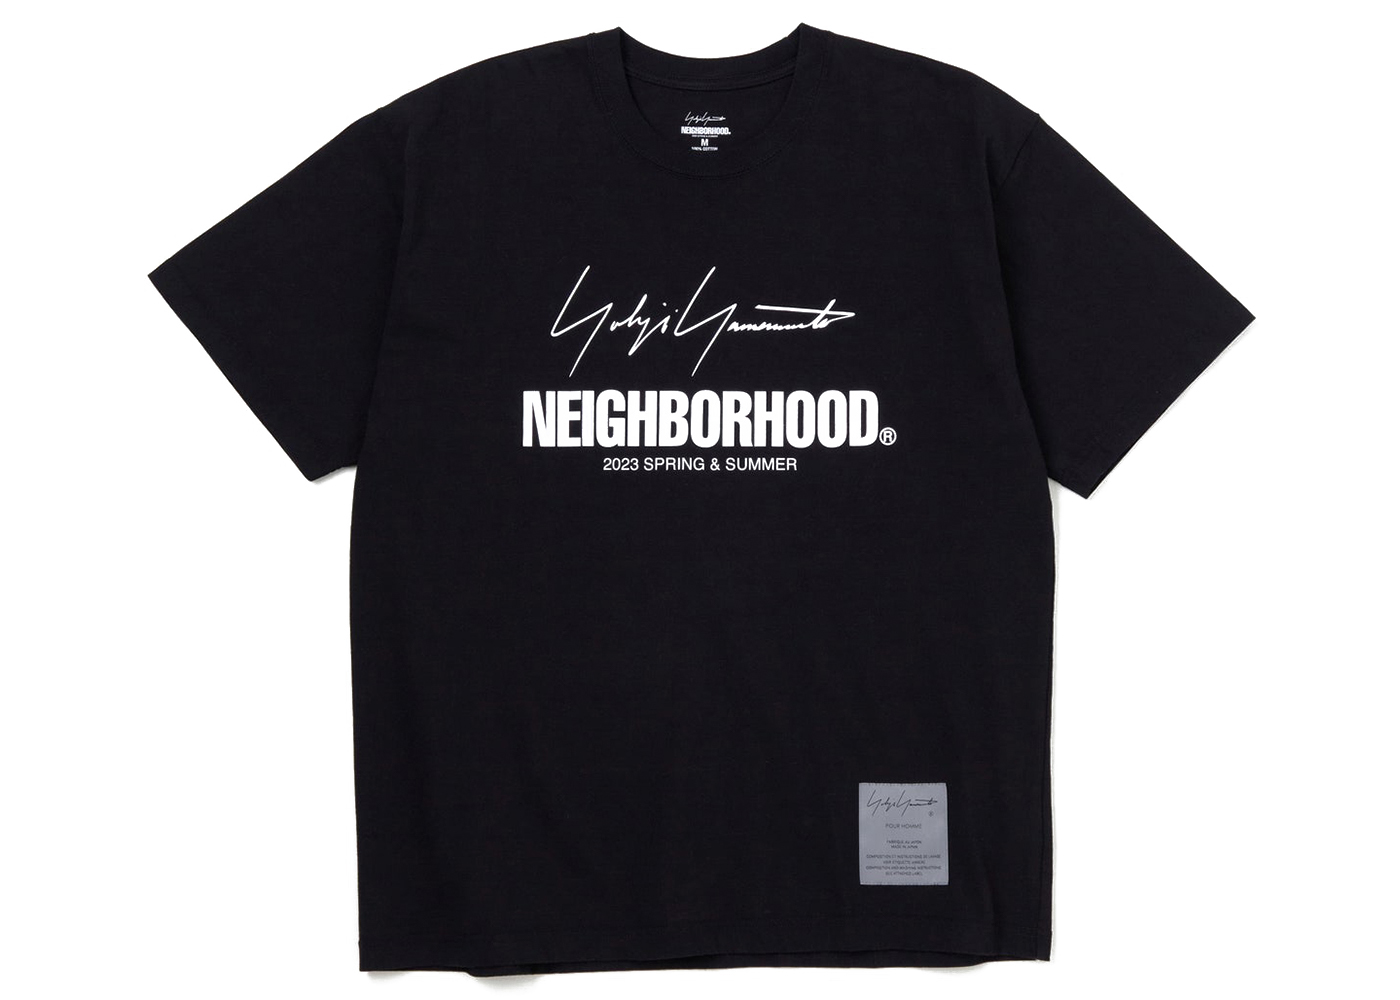 NEIGHBORHOOD YOHJI YAMAMOTO Tシャツ Mサイズ-